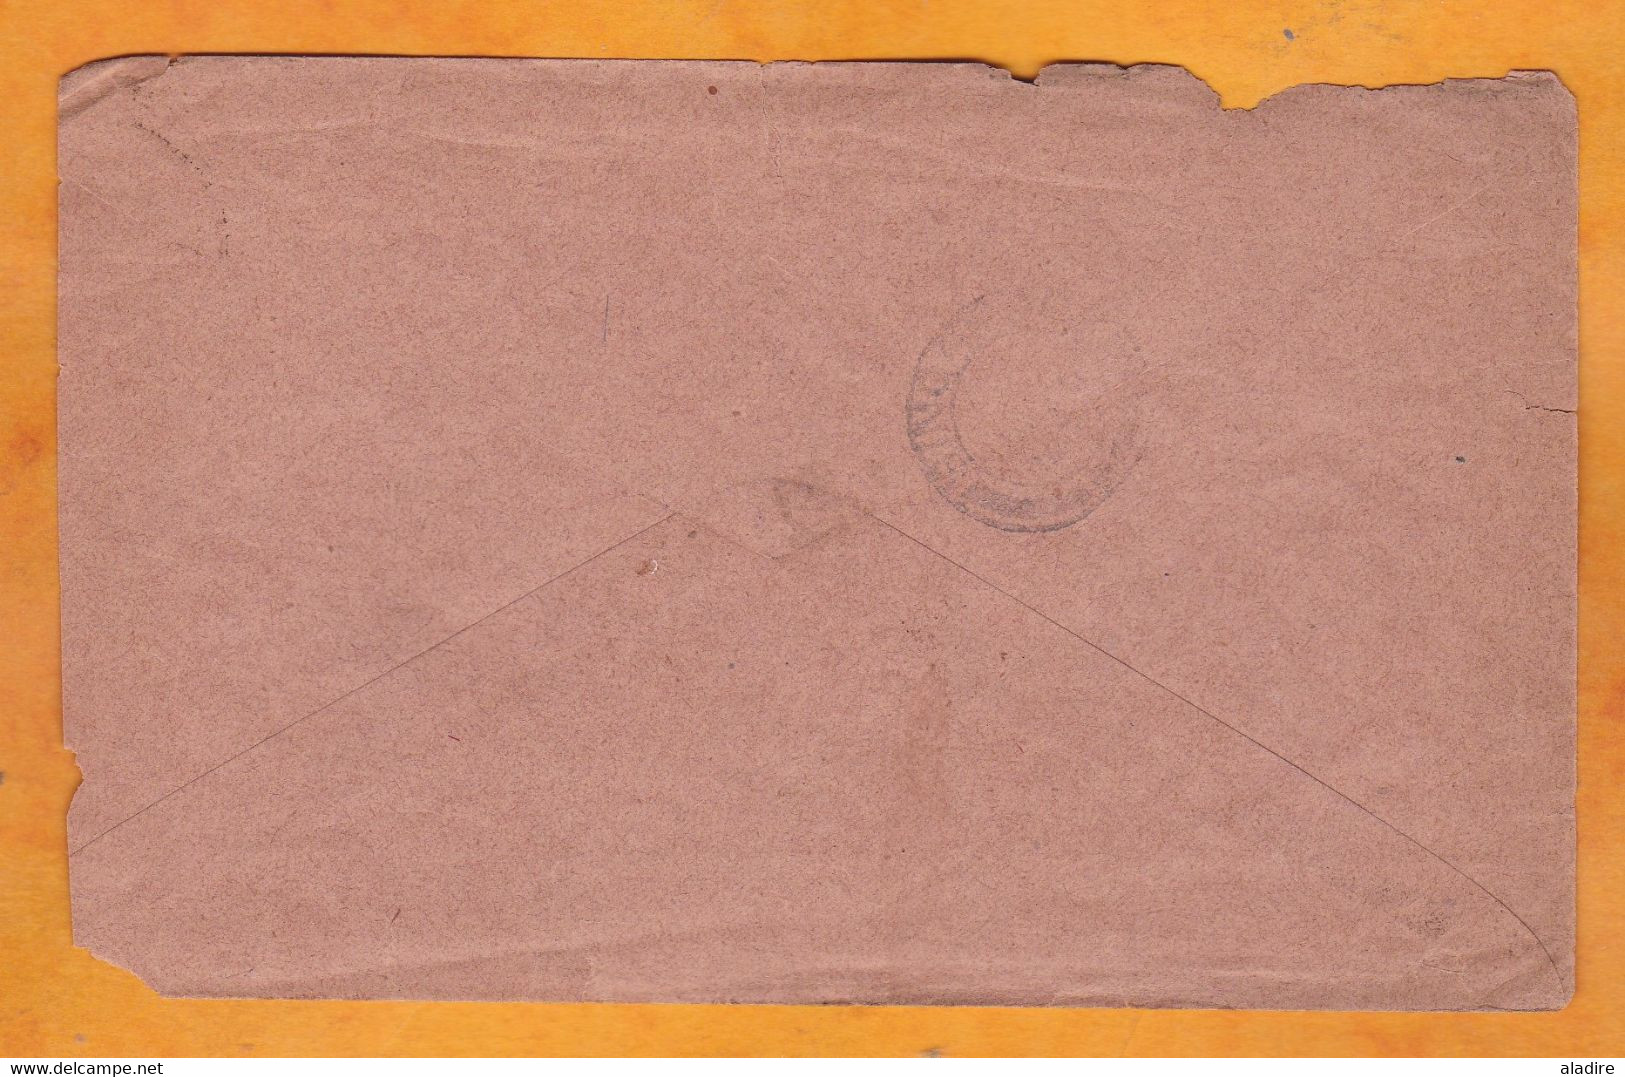 1909 - LIGNE N - PAQ. FR. N° 8 - Enveloppe D' Indochine Vers Singapour, GB - Affranchissement 25 Centimes - Lettres & Documents